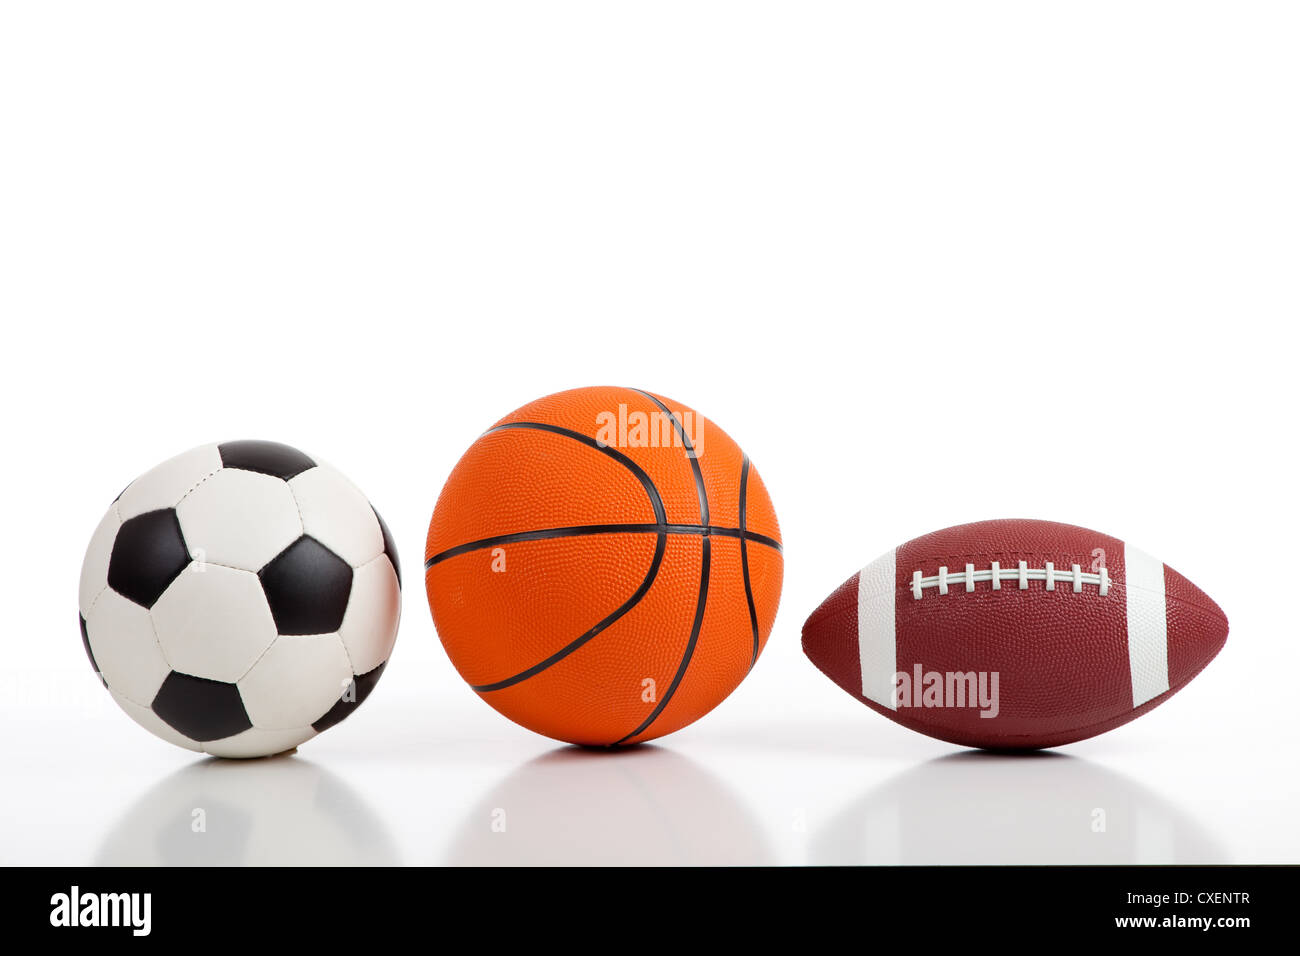 Surtido de balones deportivos sobre un fondo blanco, incluyendo un balón de fútbol, una cancha de baloncesto y una pelota de fútbol americano Foto de stock